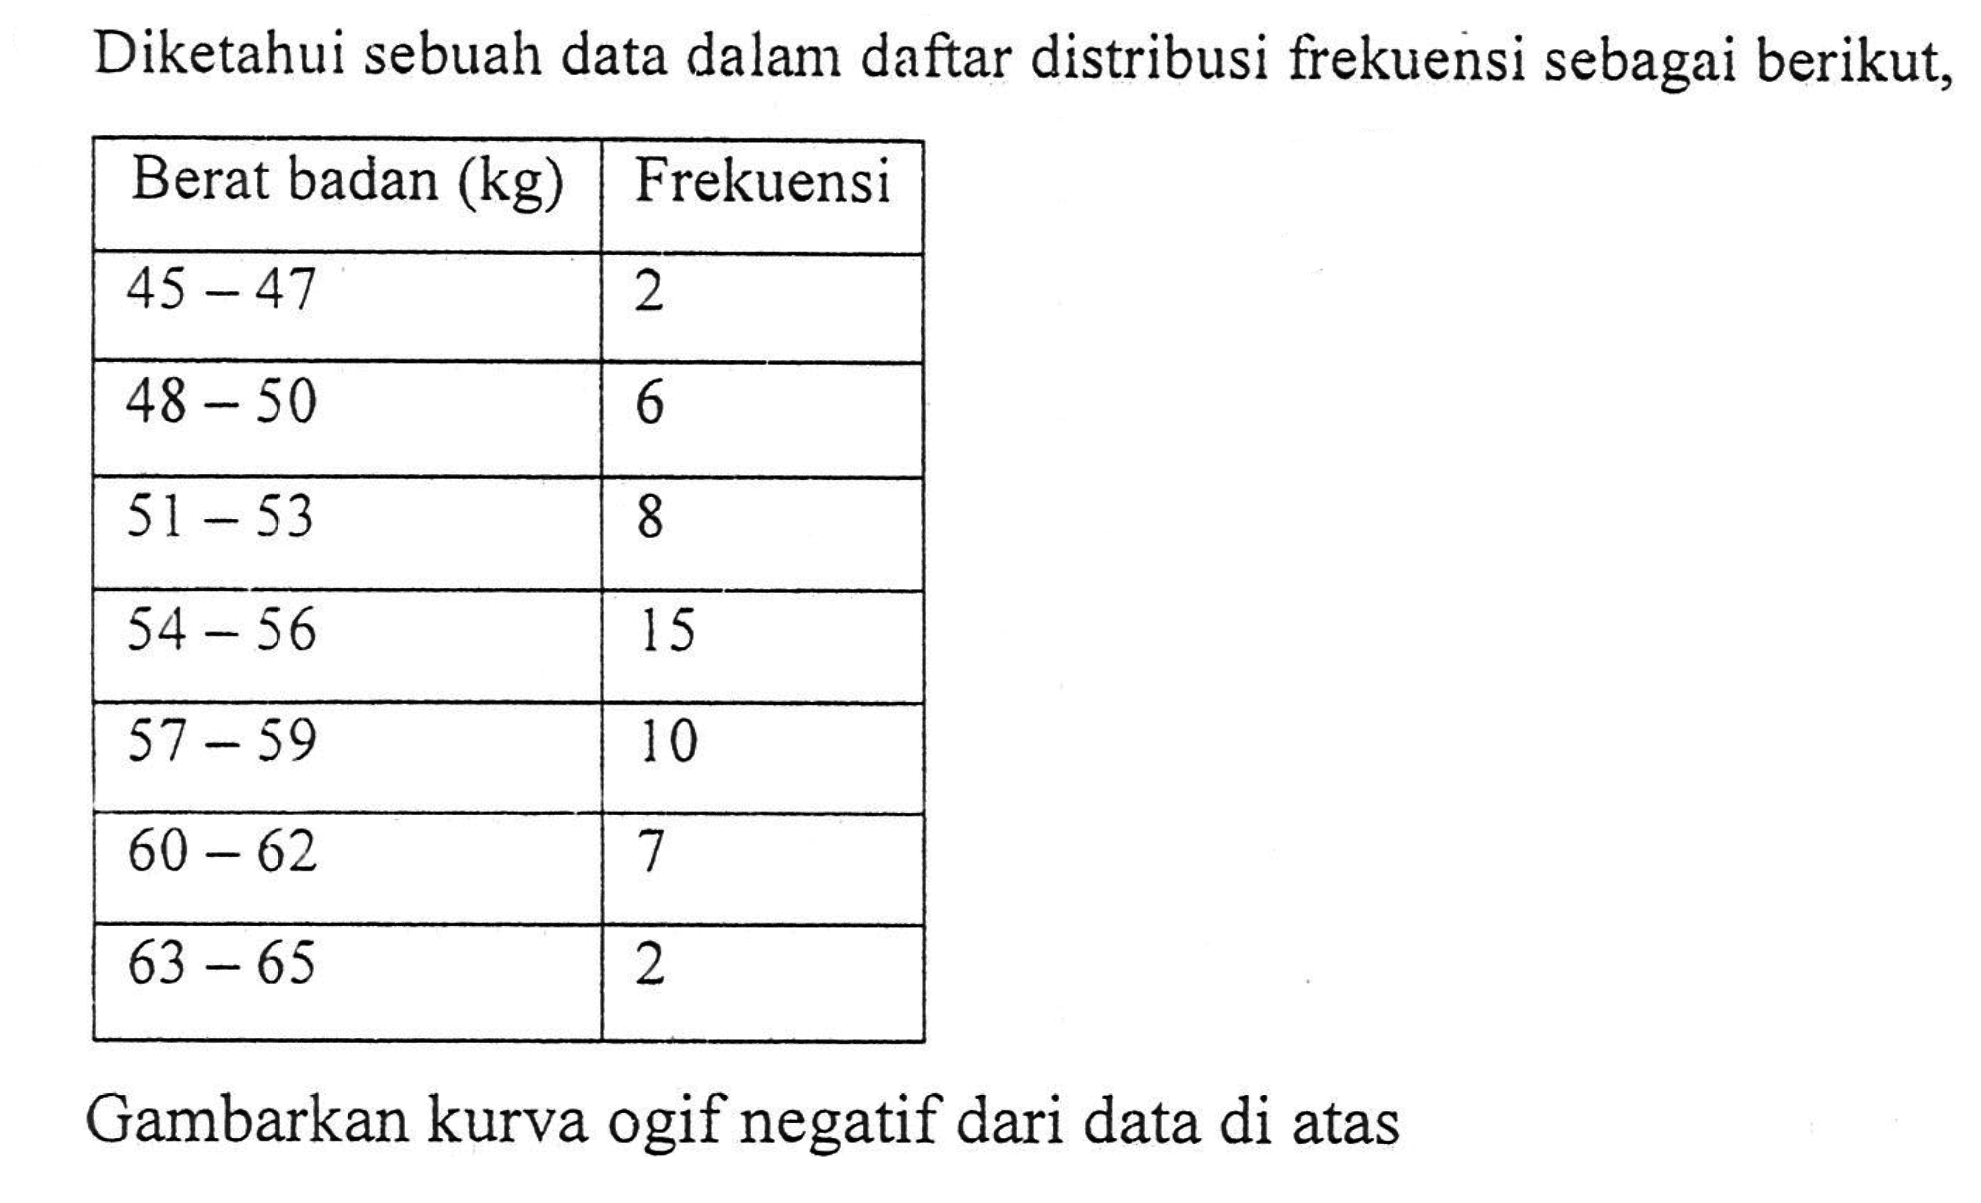 Diketahui sebuah data dalam daftar distribusi frekuensi sebagai berikut, Berat badan (kg) Frekuensi 45-47 2 48-50 6 51-53 8 54-56 15 57-59 10 60-62 7 63-65 2 Gambarkan kurva ogif negatif dari data di atas